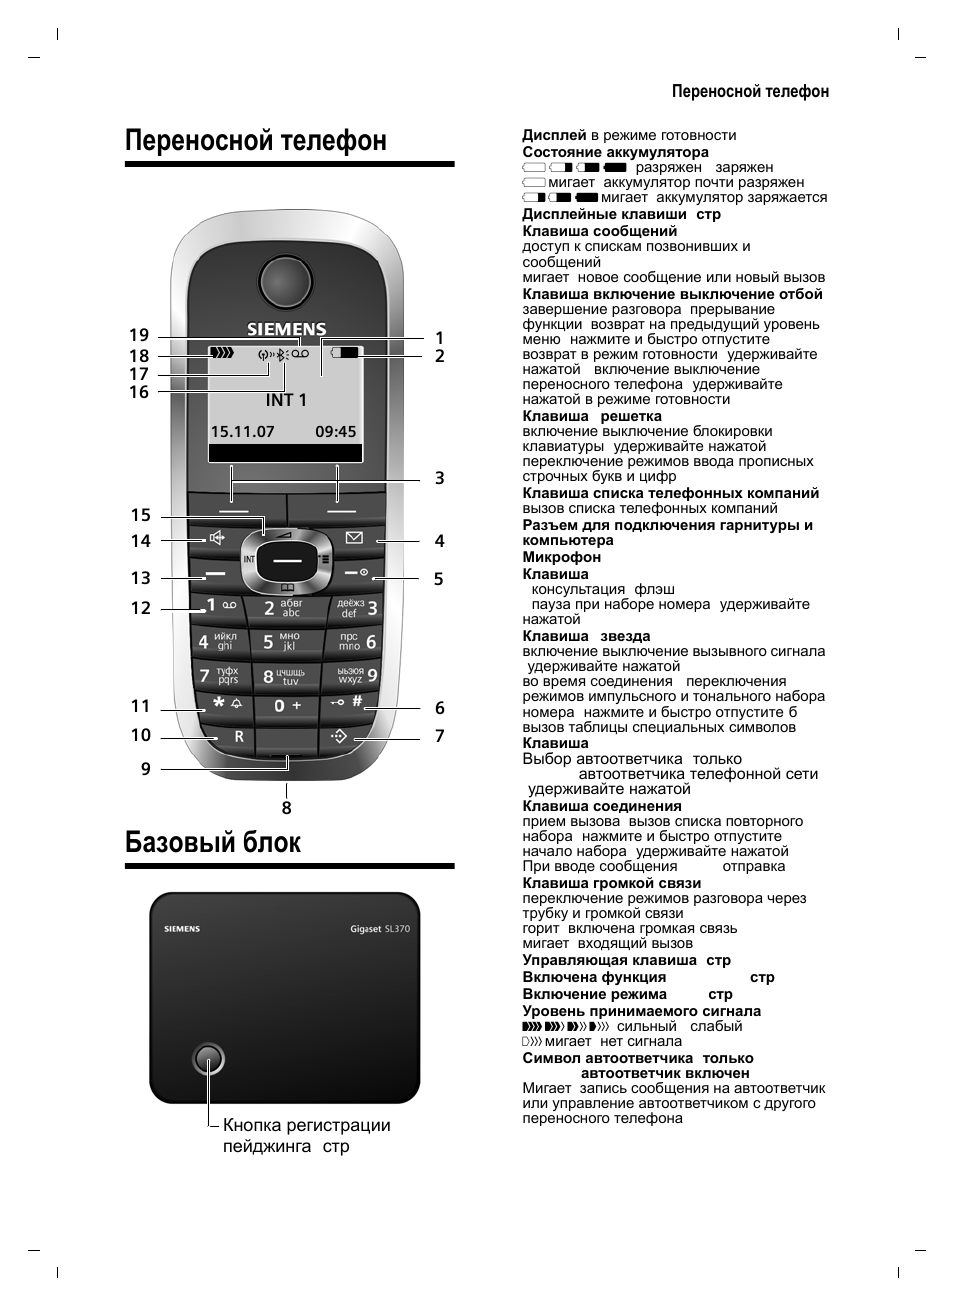 Инструкция по эксплуатации телефону siemens